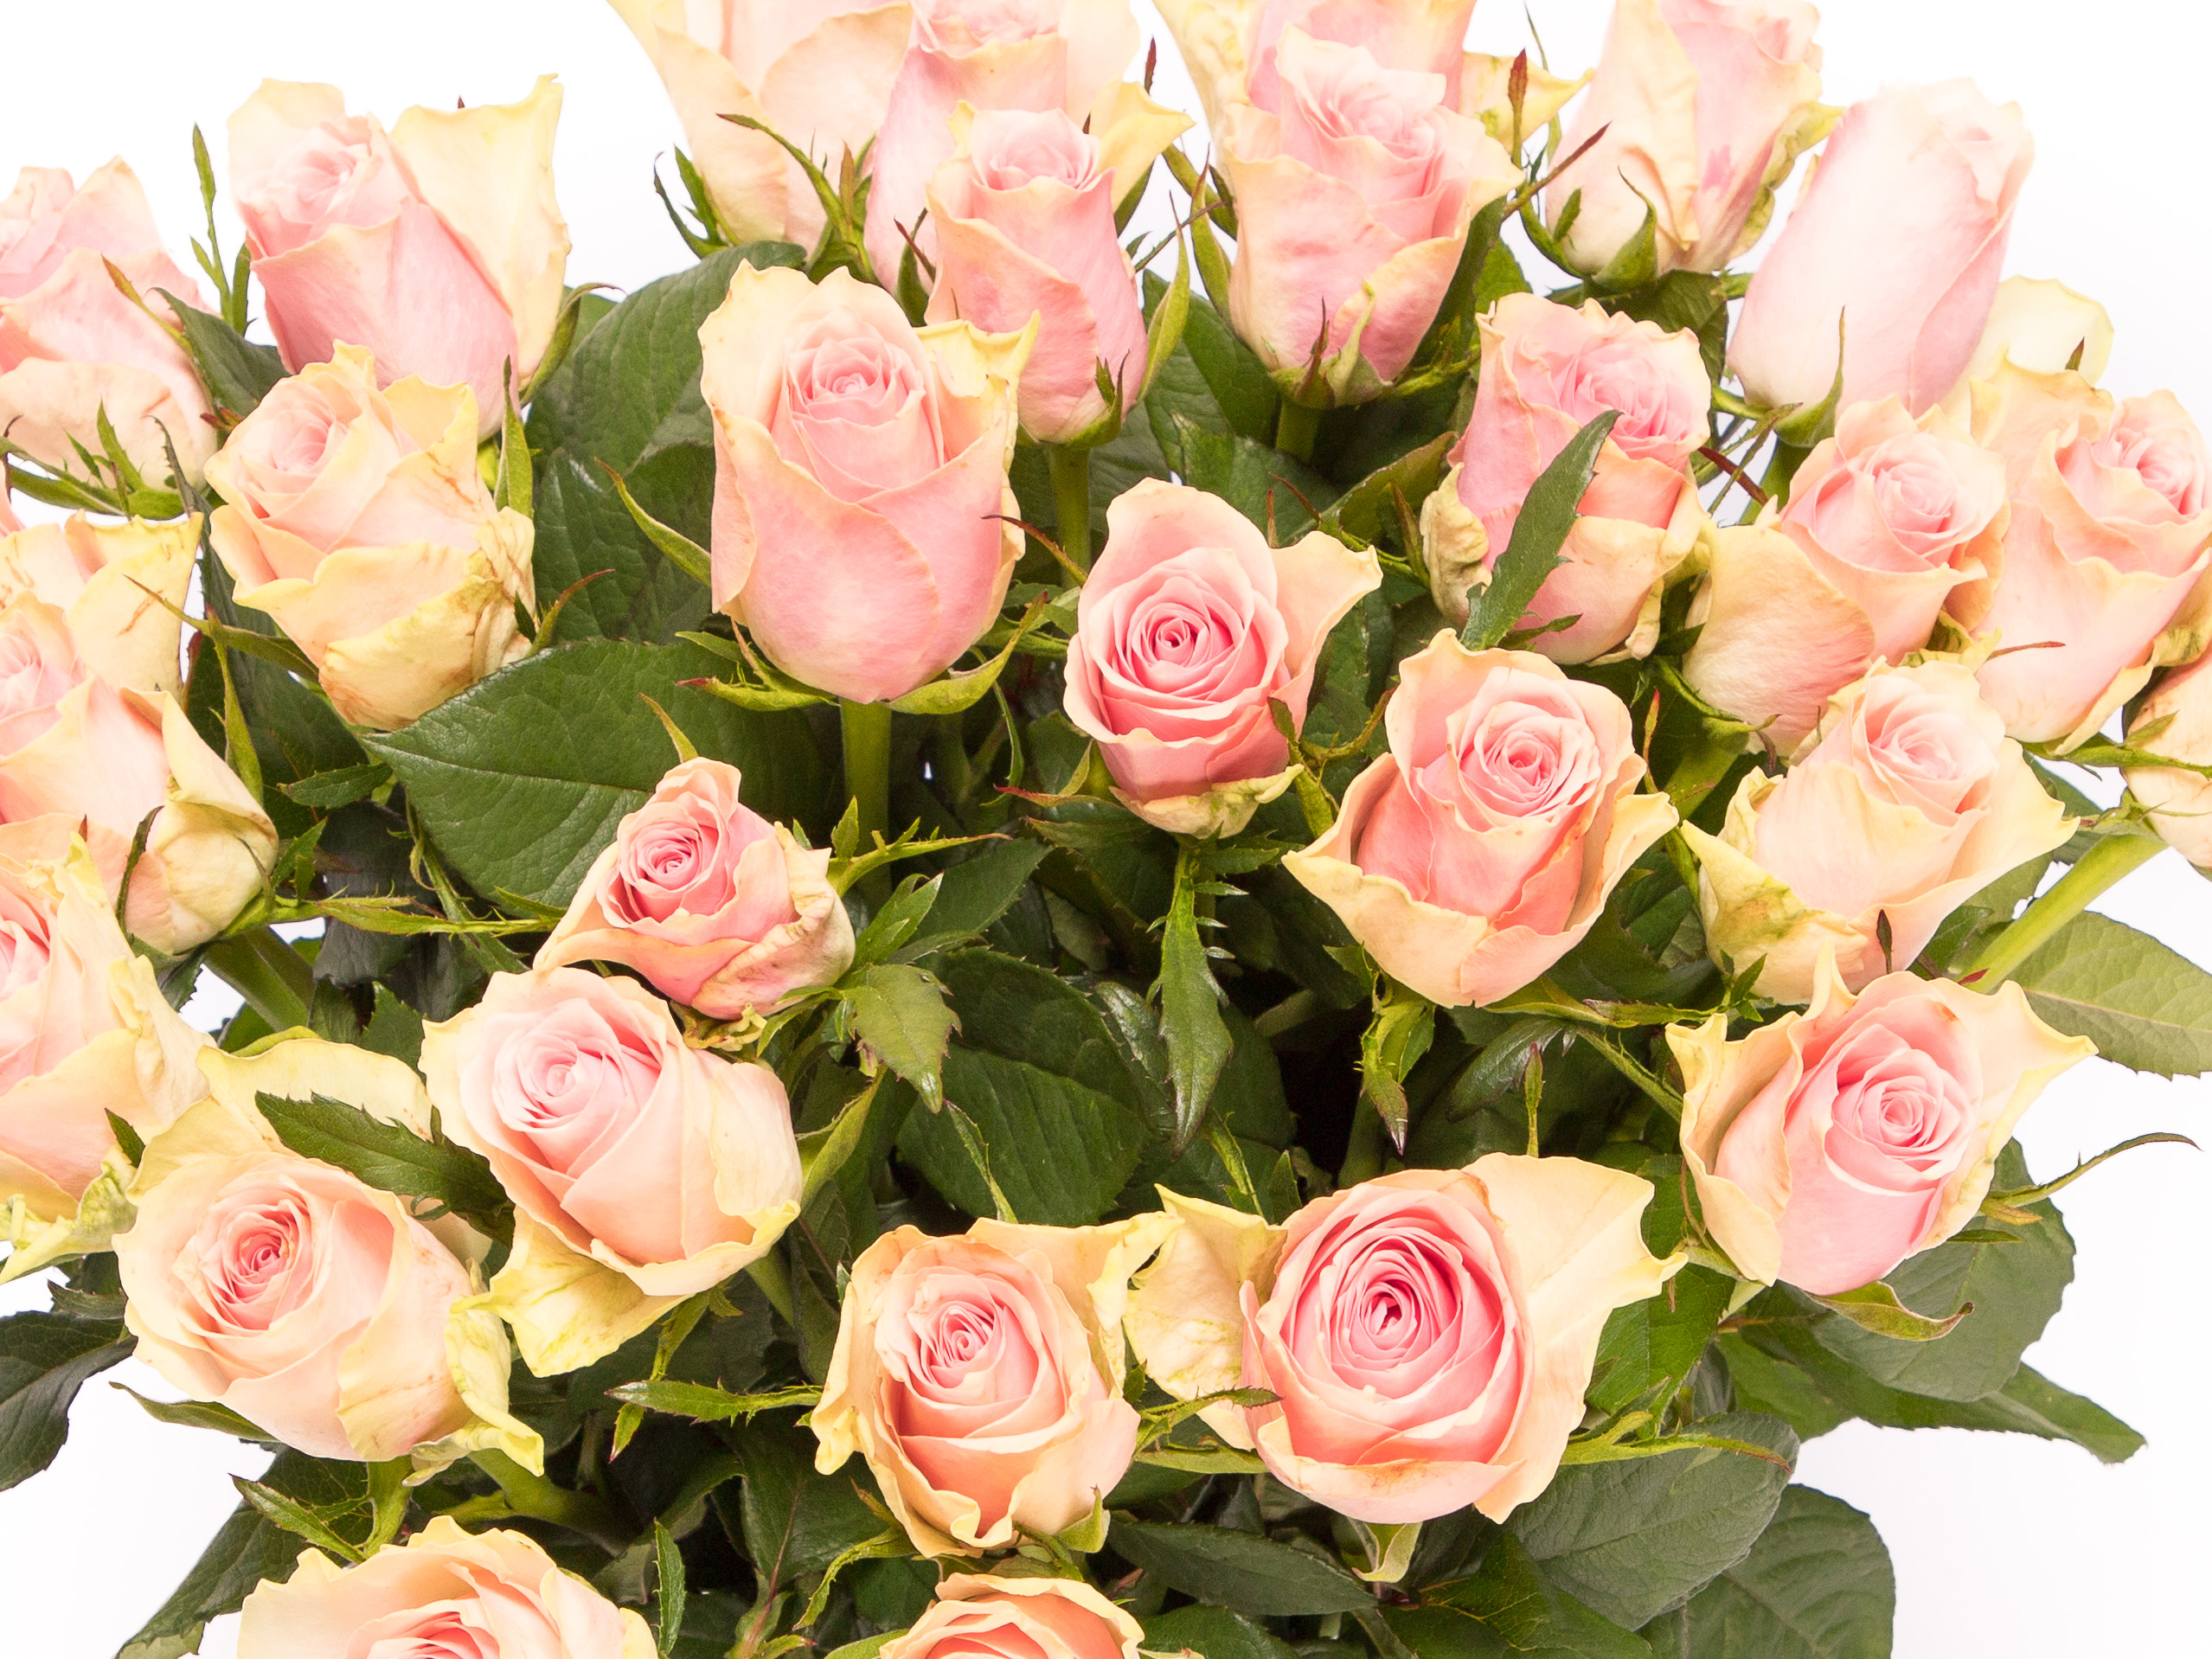 interferentie Doorweekt studie Roze rozen bestellen? De #1 in het leveren van super rozen!